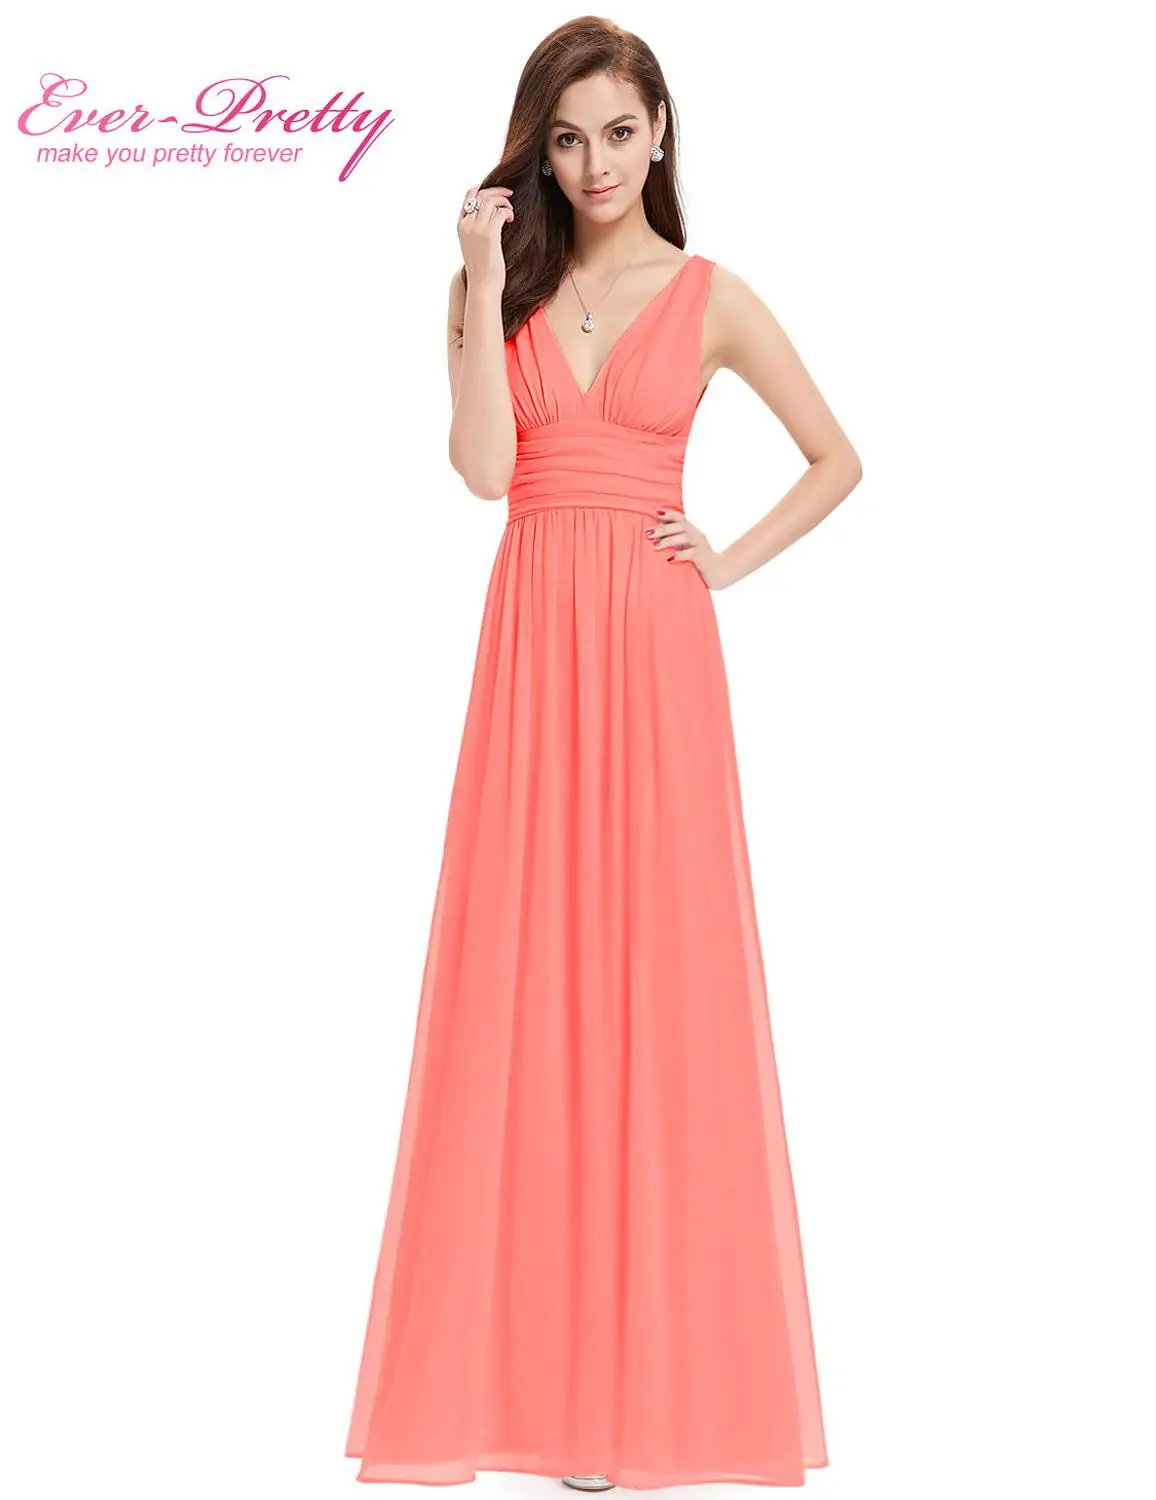 Платья для выпускного вечера Ever Pretty EP09016 шифоновые платья для особых случаев V шеи элегантное Королевское синее длинное платье для выпускного вечера - Цвет: Coral